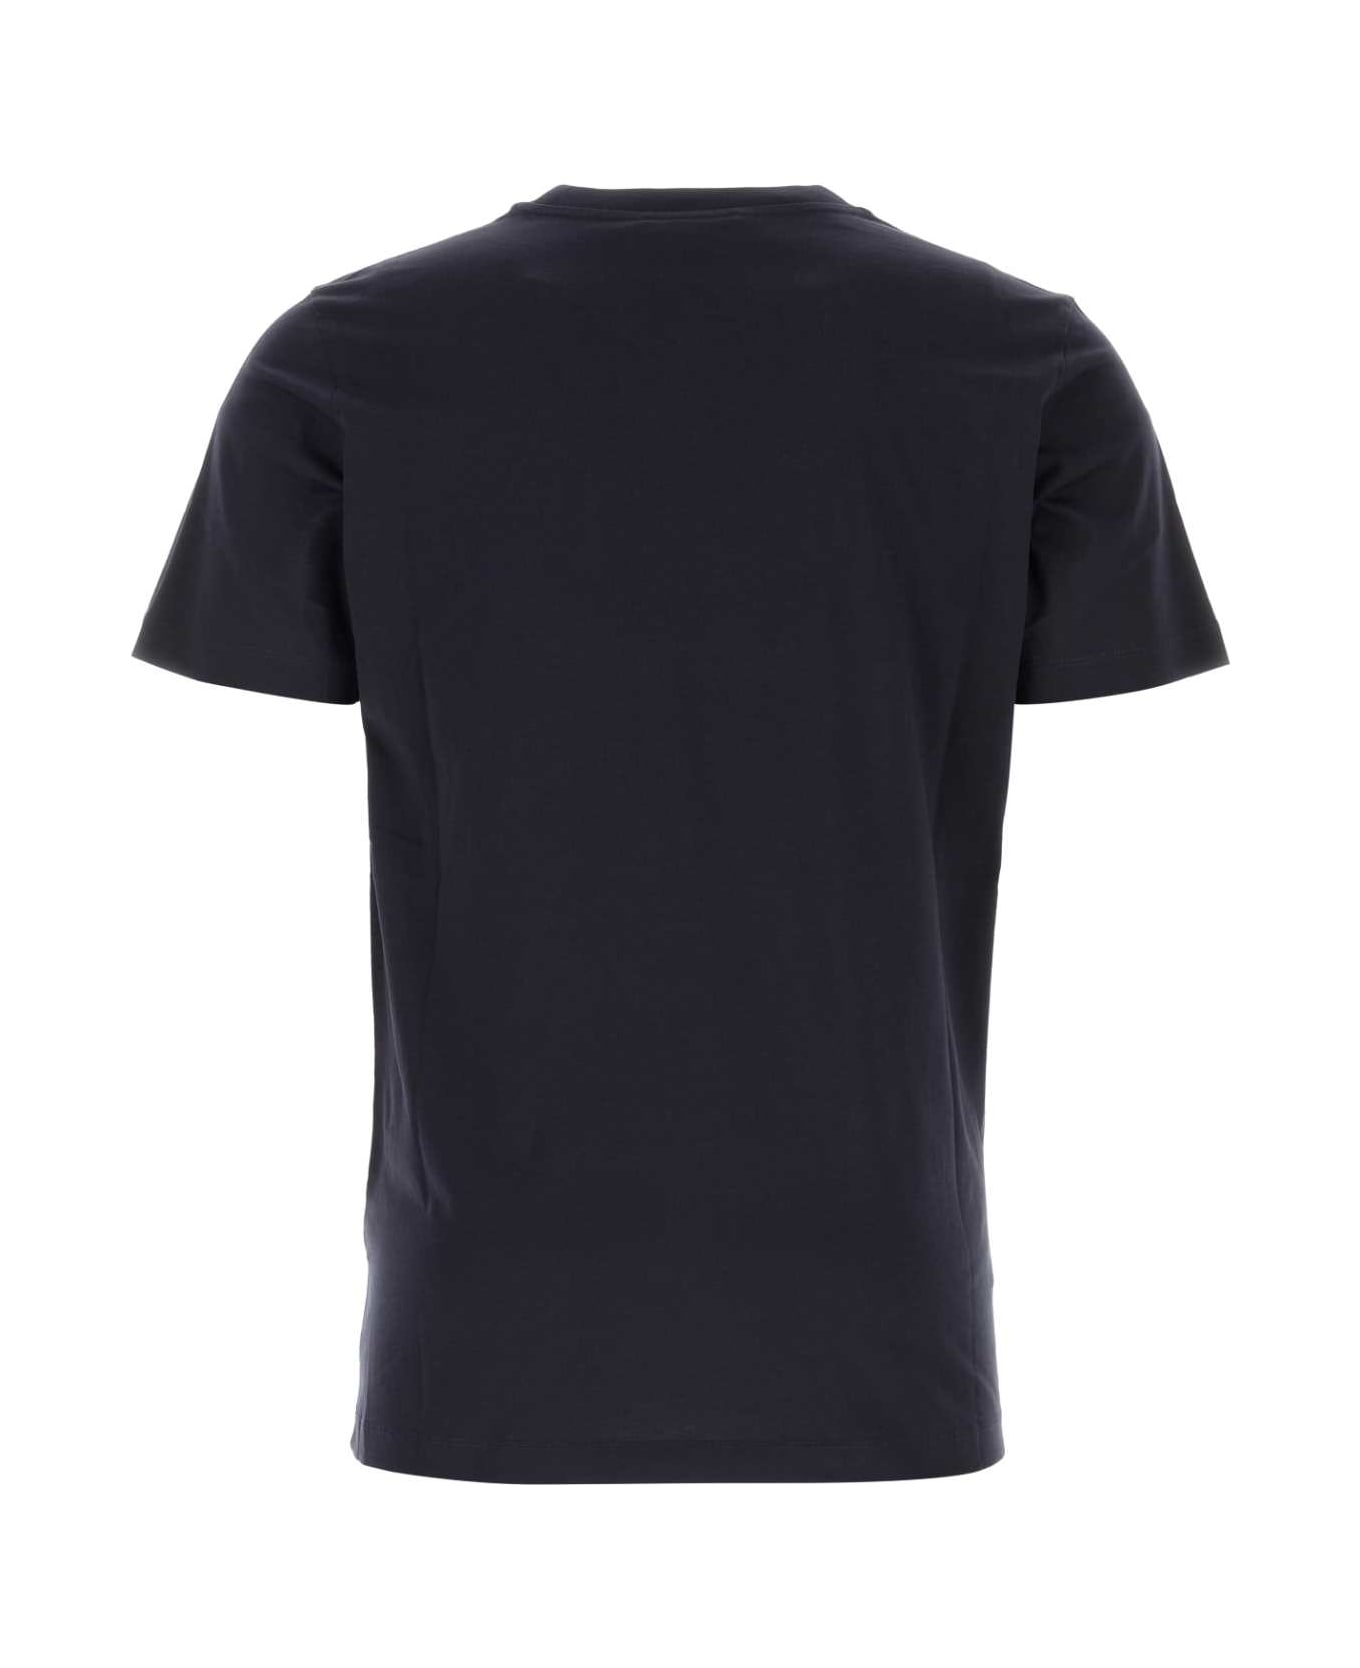 Marni Midnight Blue Cotton T-shirt - BLUBLACK